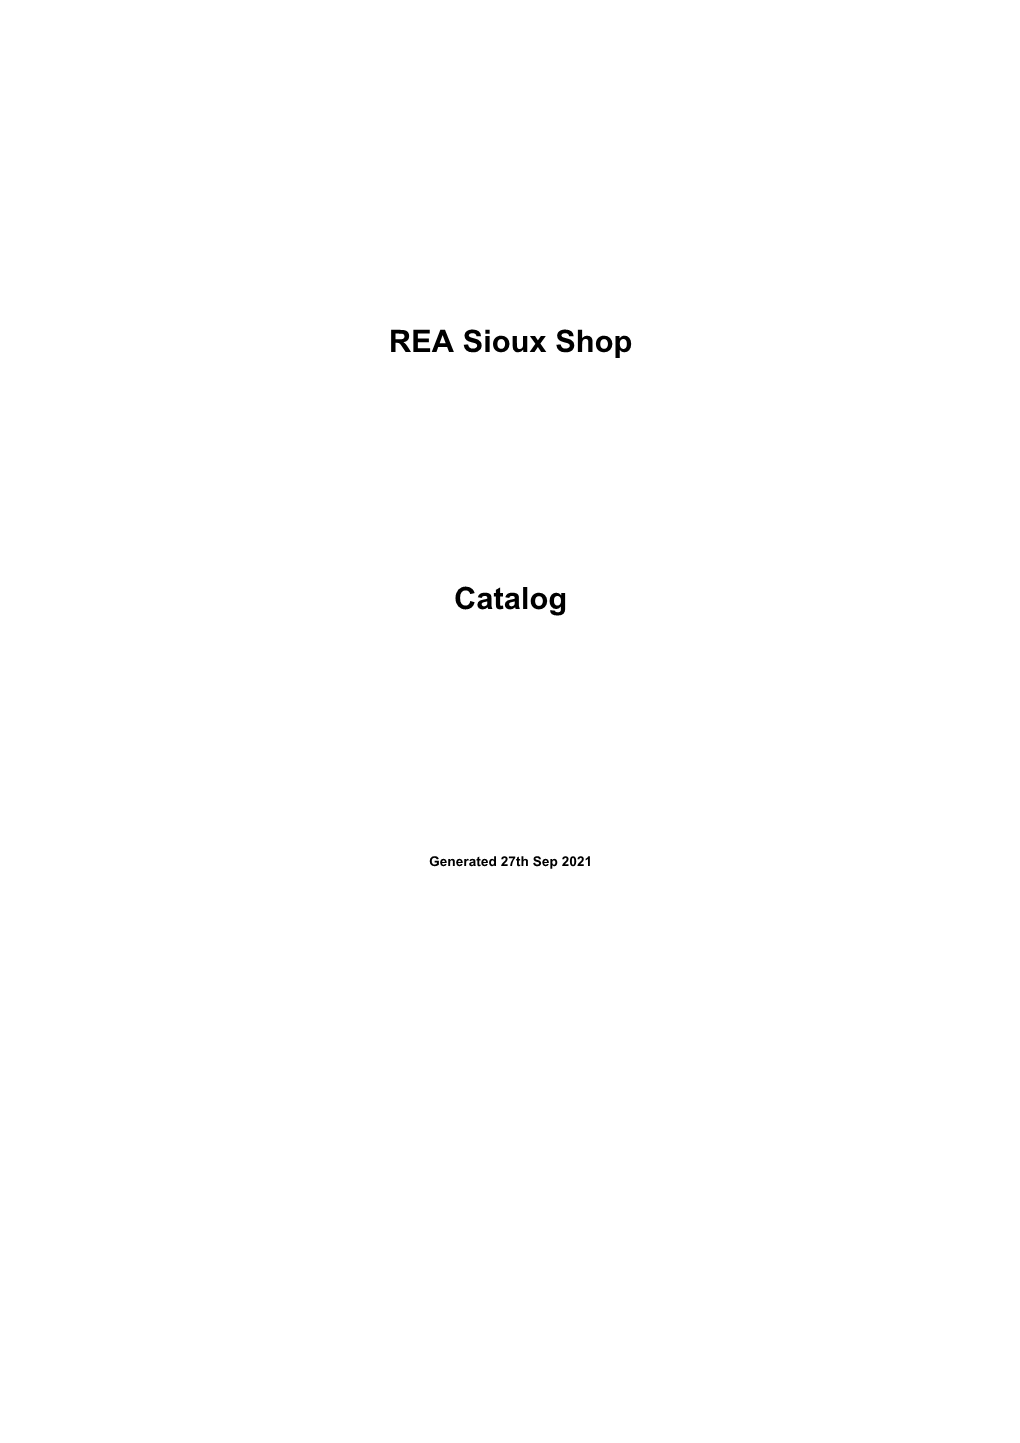 REA Sioux Shop Catalog